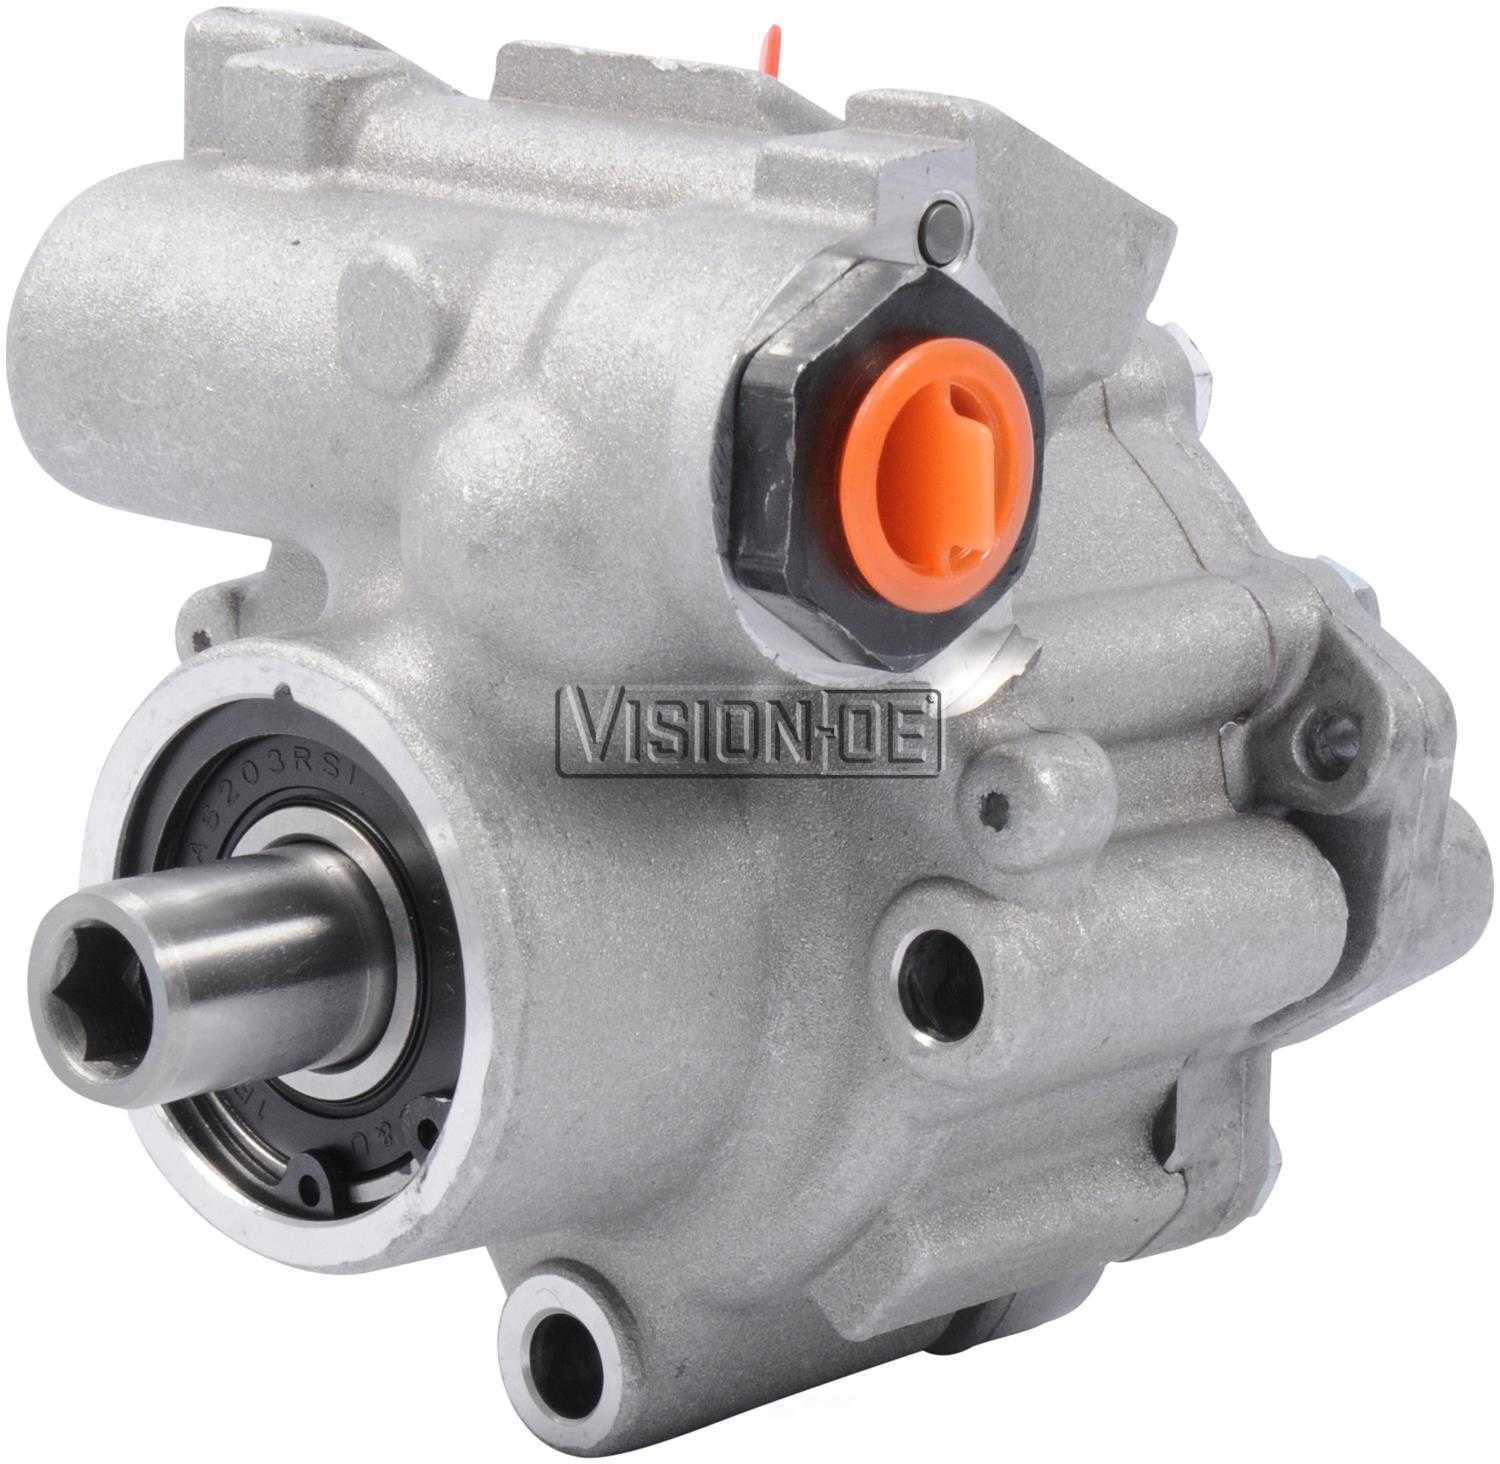 VISION-OE - New Power Steering Pump - VOE N950-0118